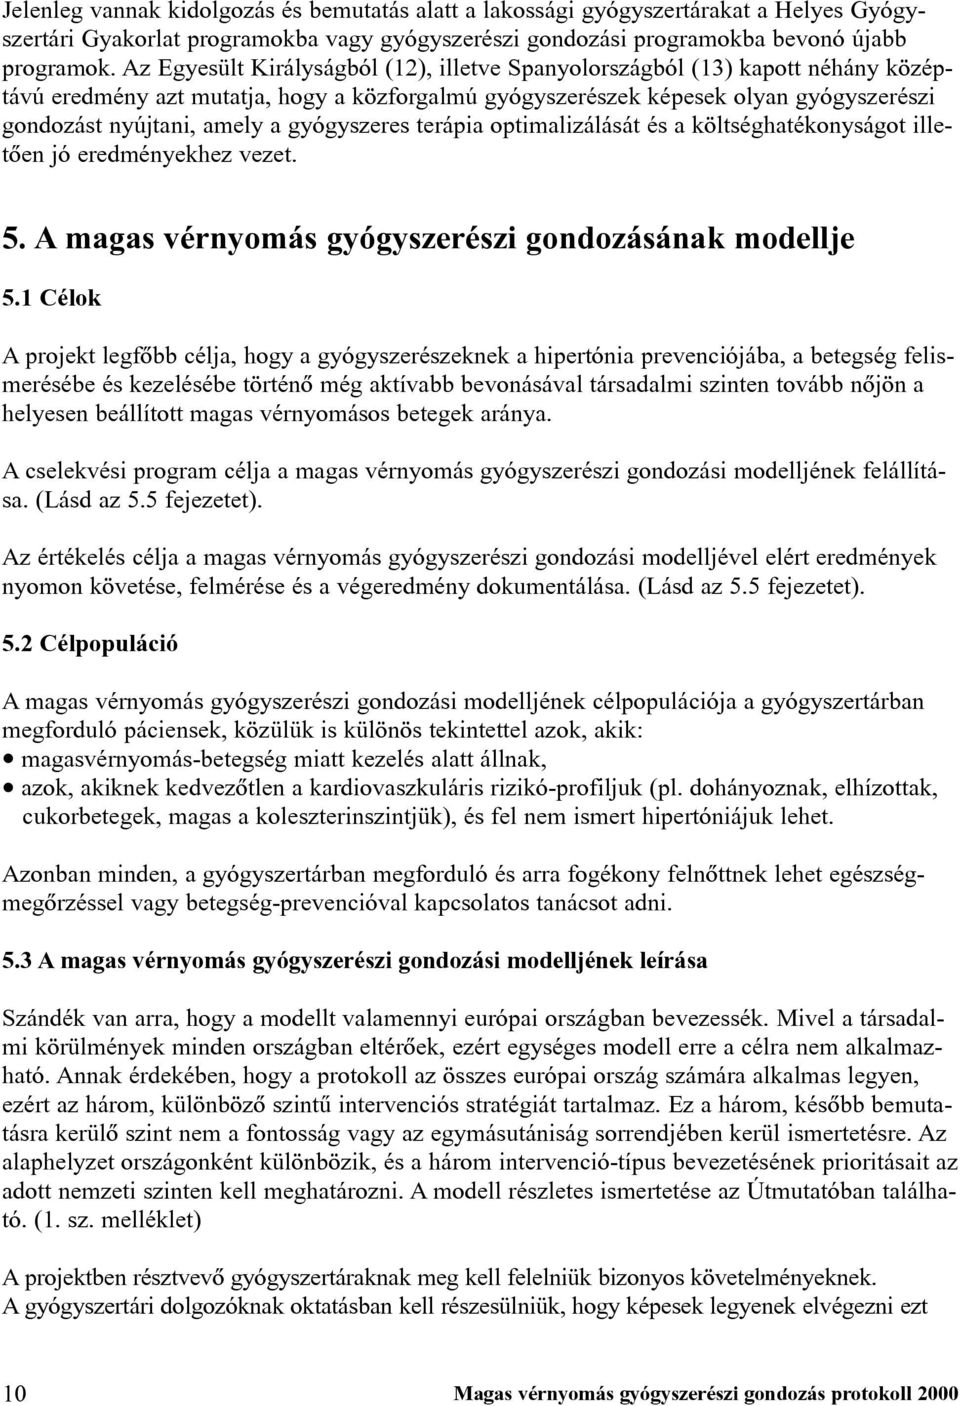 magas vérnyomás 2 fokú törvény)